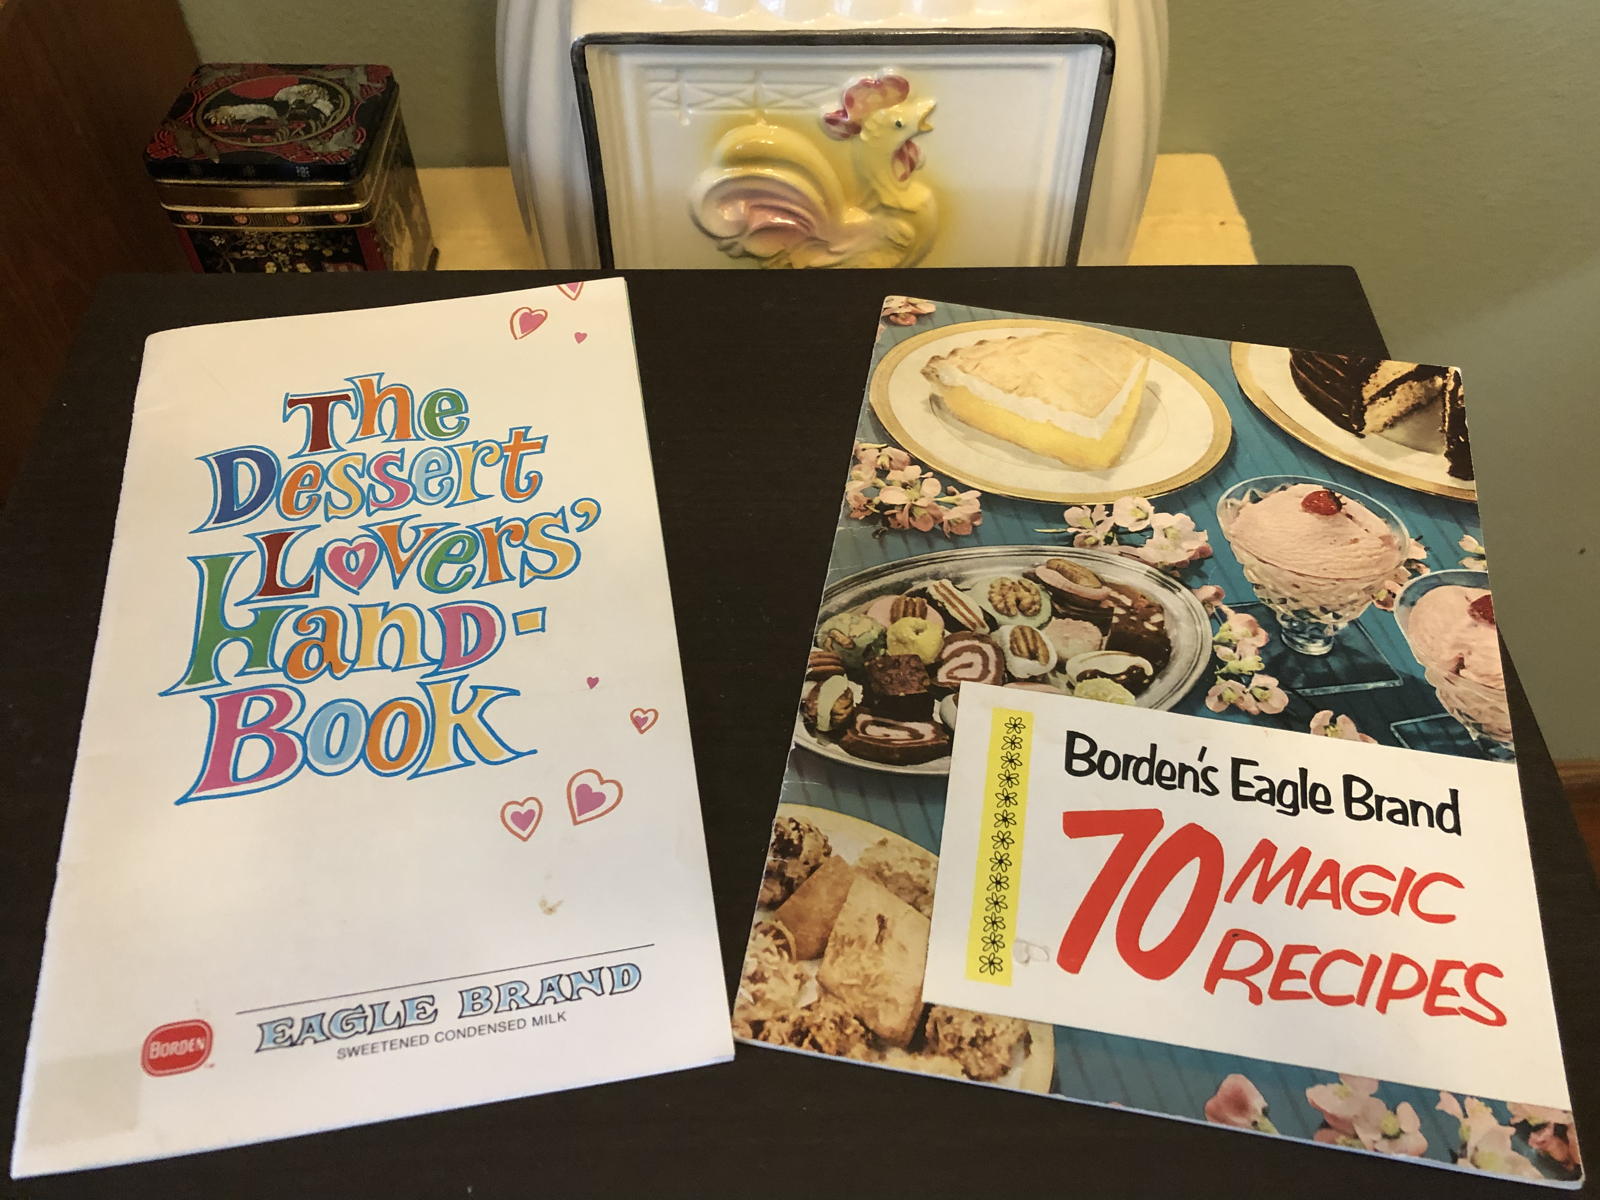 Borden sweetened condensed milk cookbooks: Borden’s Eagle Brand 70 Magic Recipes (1952) and The Dessert Lovers Handbook (1969); cookbooks; sweetened condensed milk